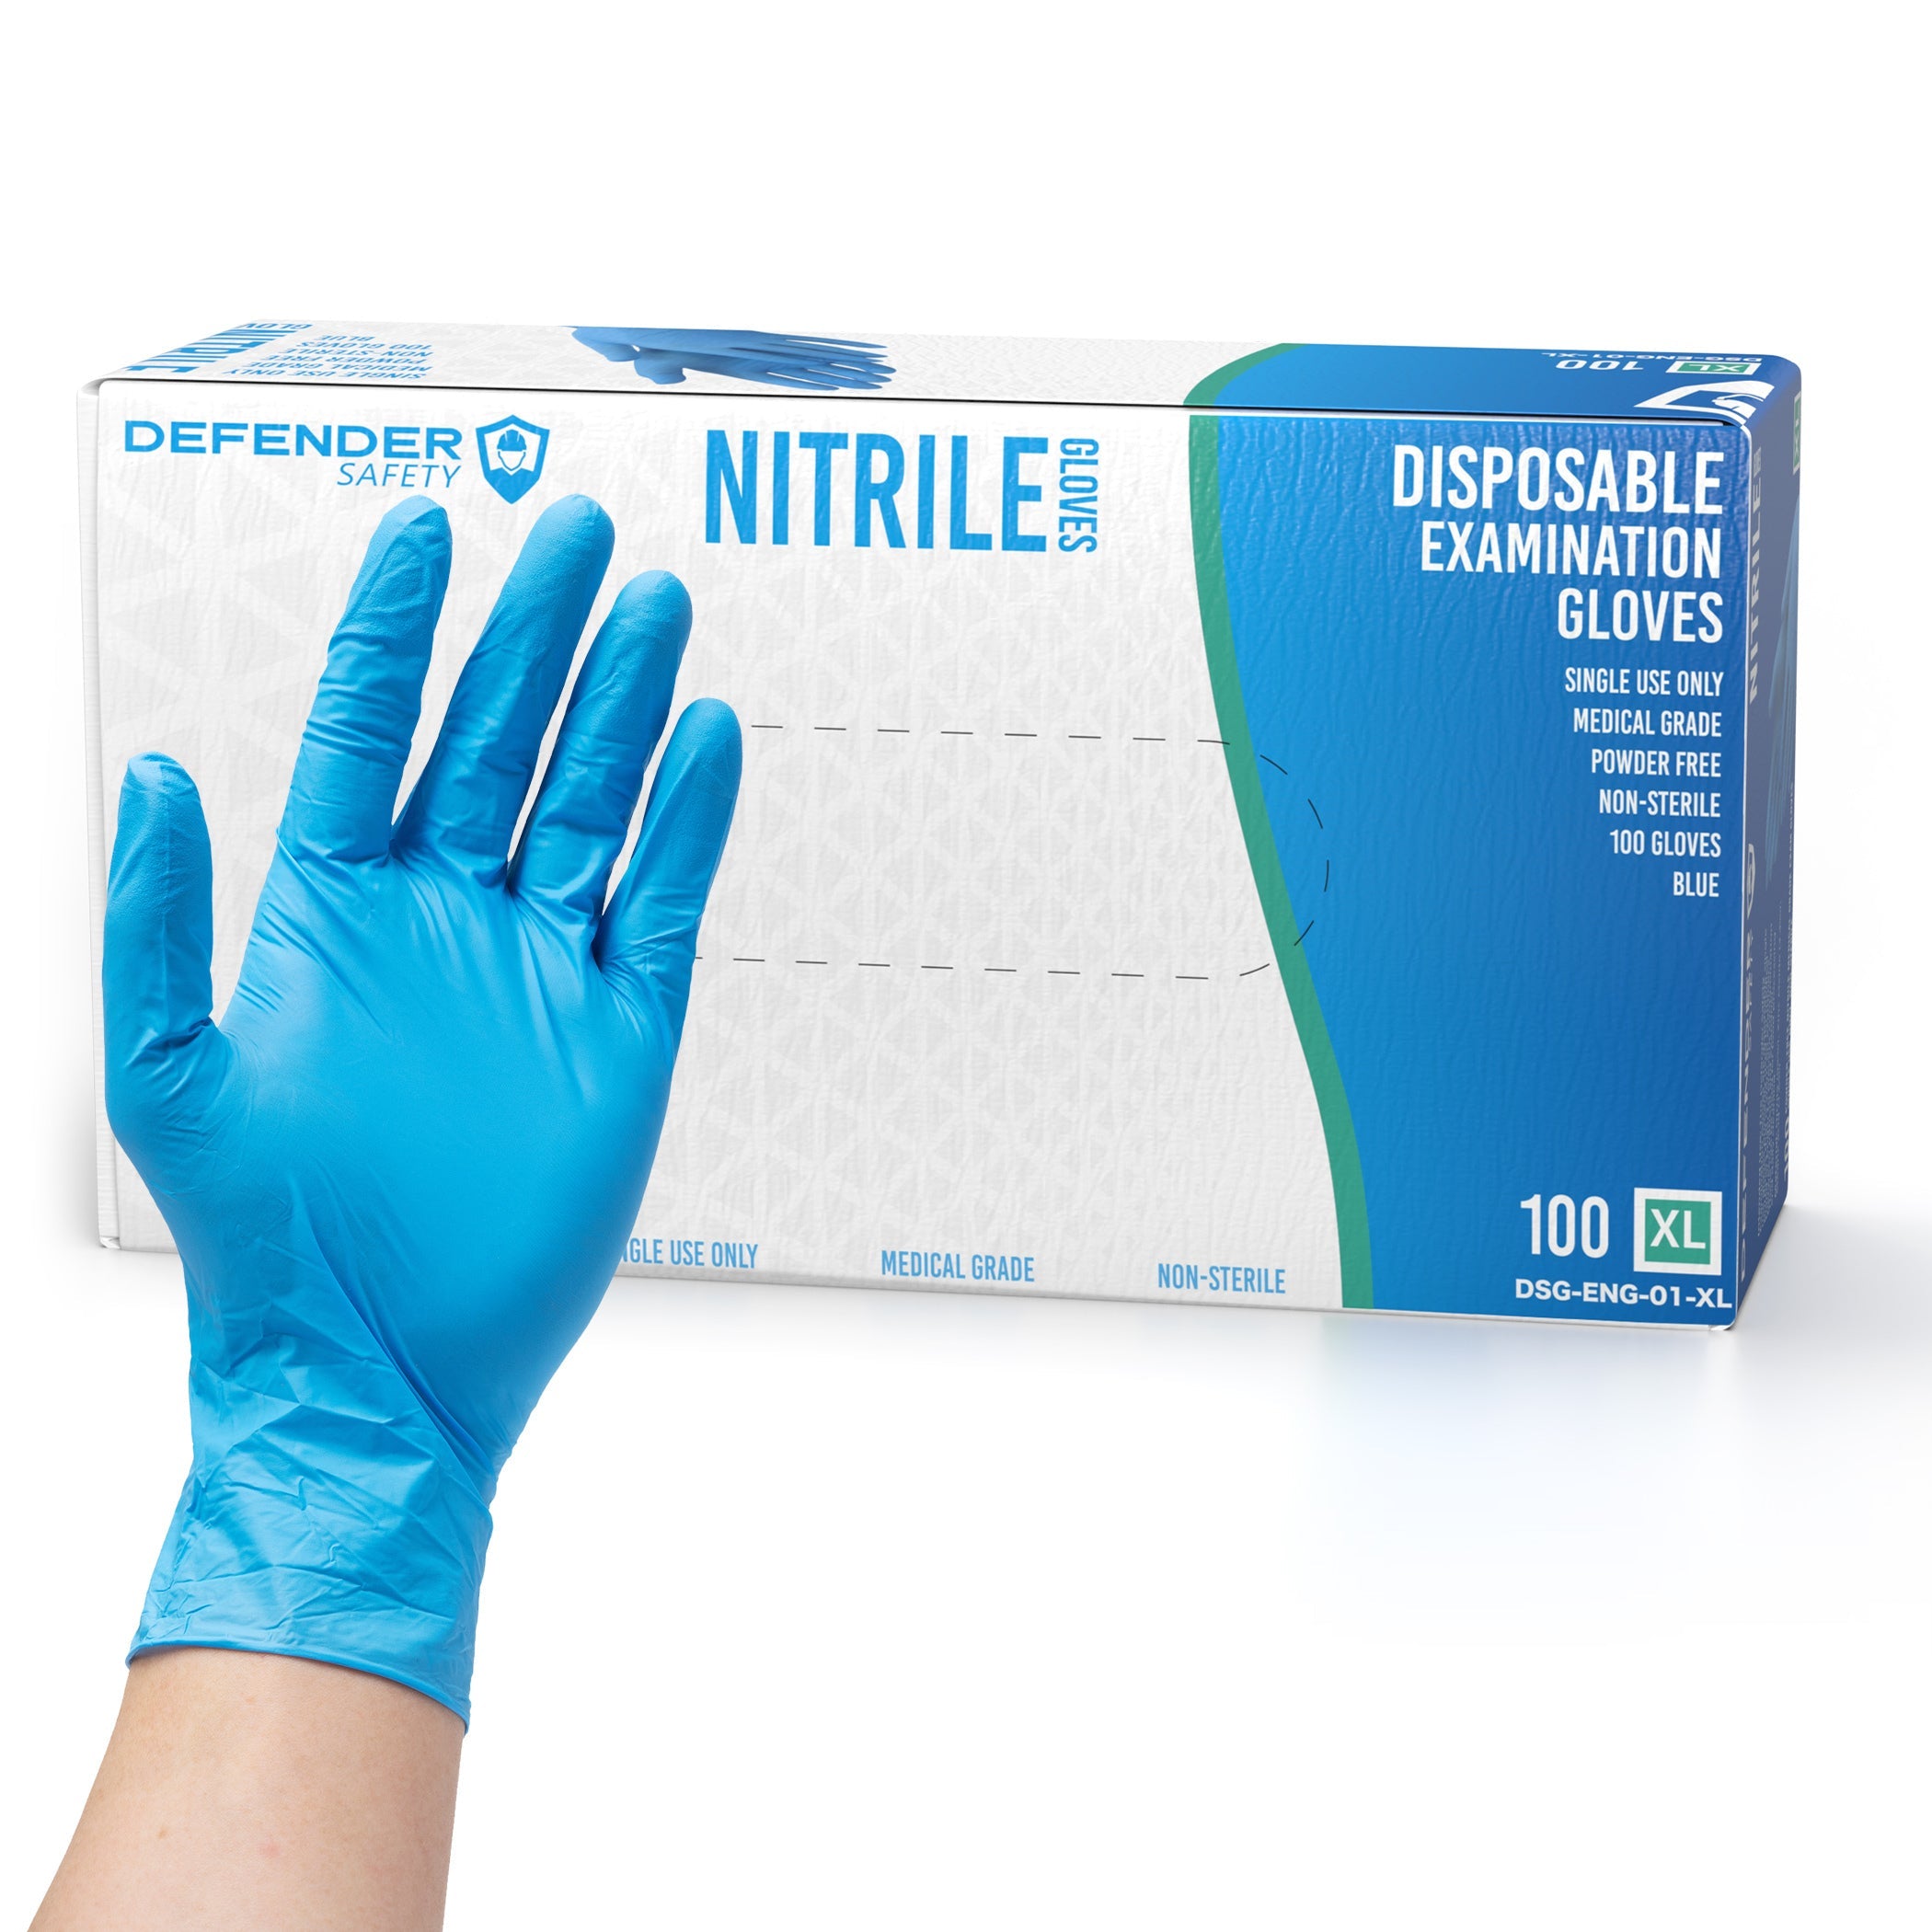 https://defendersafety.com/cdn/shop/products/35-mil-blue-nitrile-gloves-medical-grade-35-mil-powder-free-blue-223800.jpg?v=1690825028&width=2100